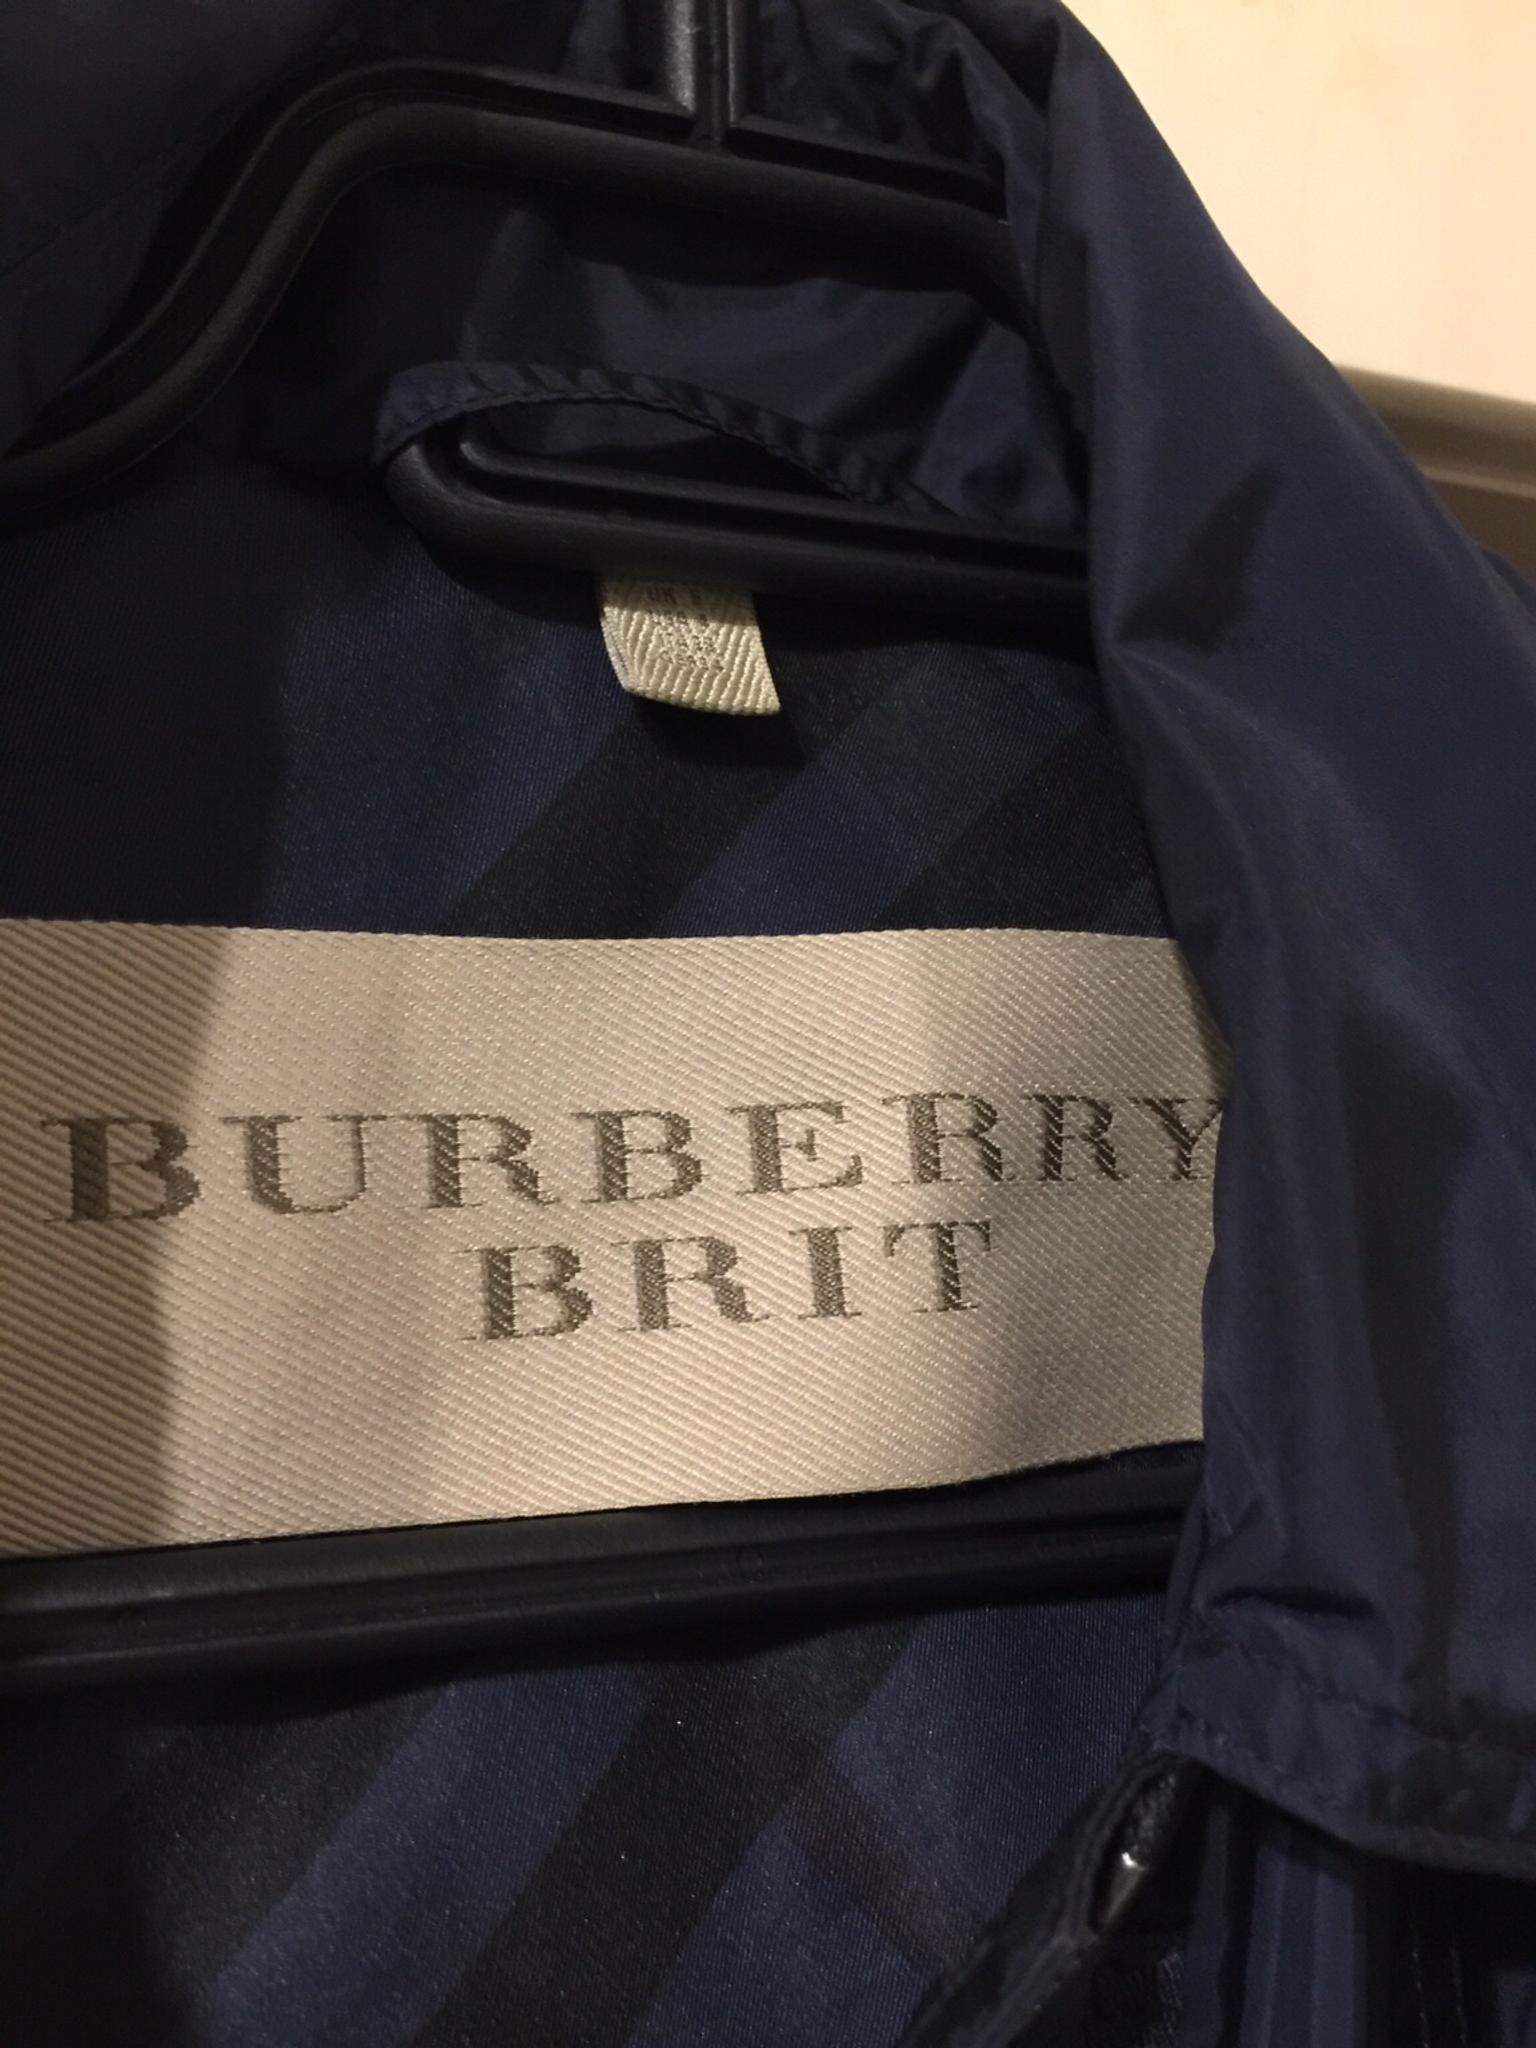 burberry brit women's coat